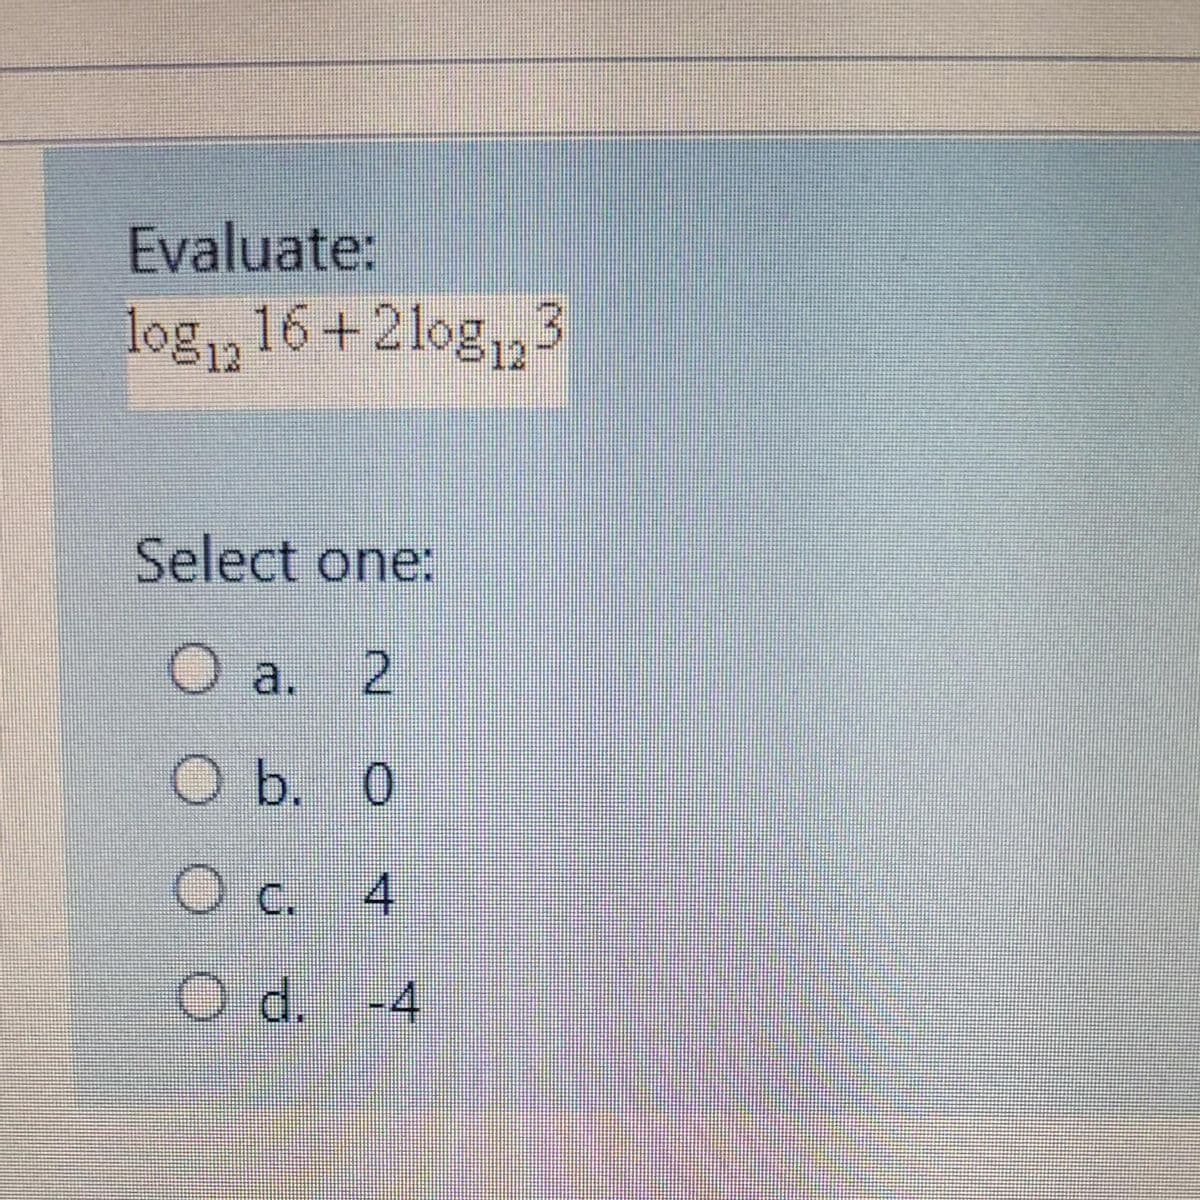 Evaluate:
log,, 16+2log,,3
Select one:
Oa. 2
Ob. 0
Oc.
4.
O d. -4
